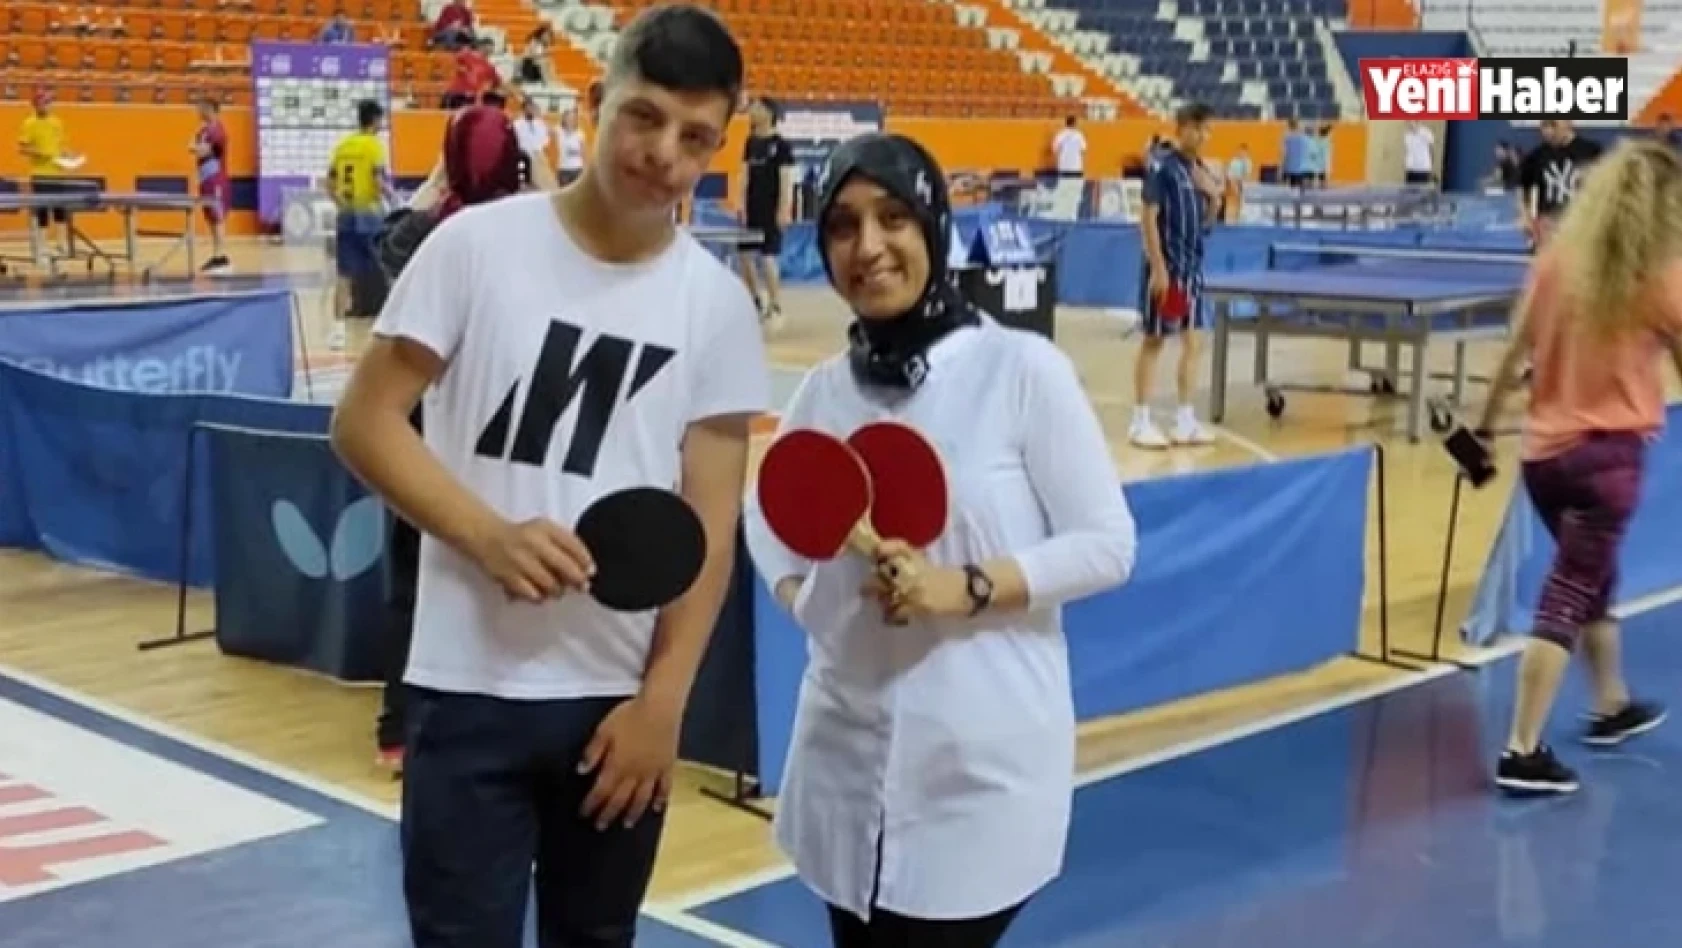 Elazığlı sporcu Türkiye şampiyonu oldu